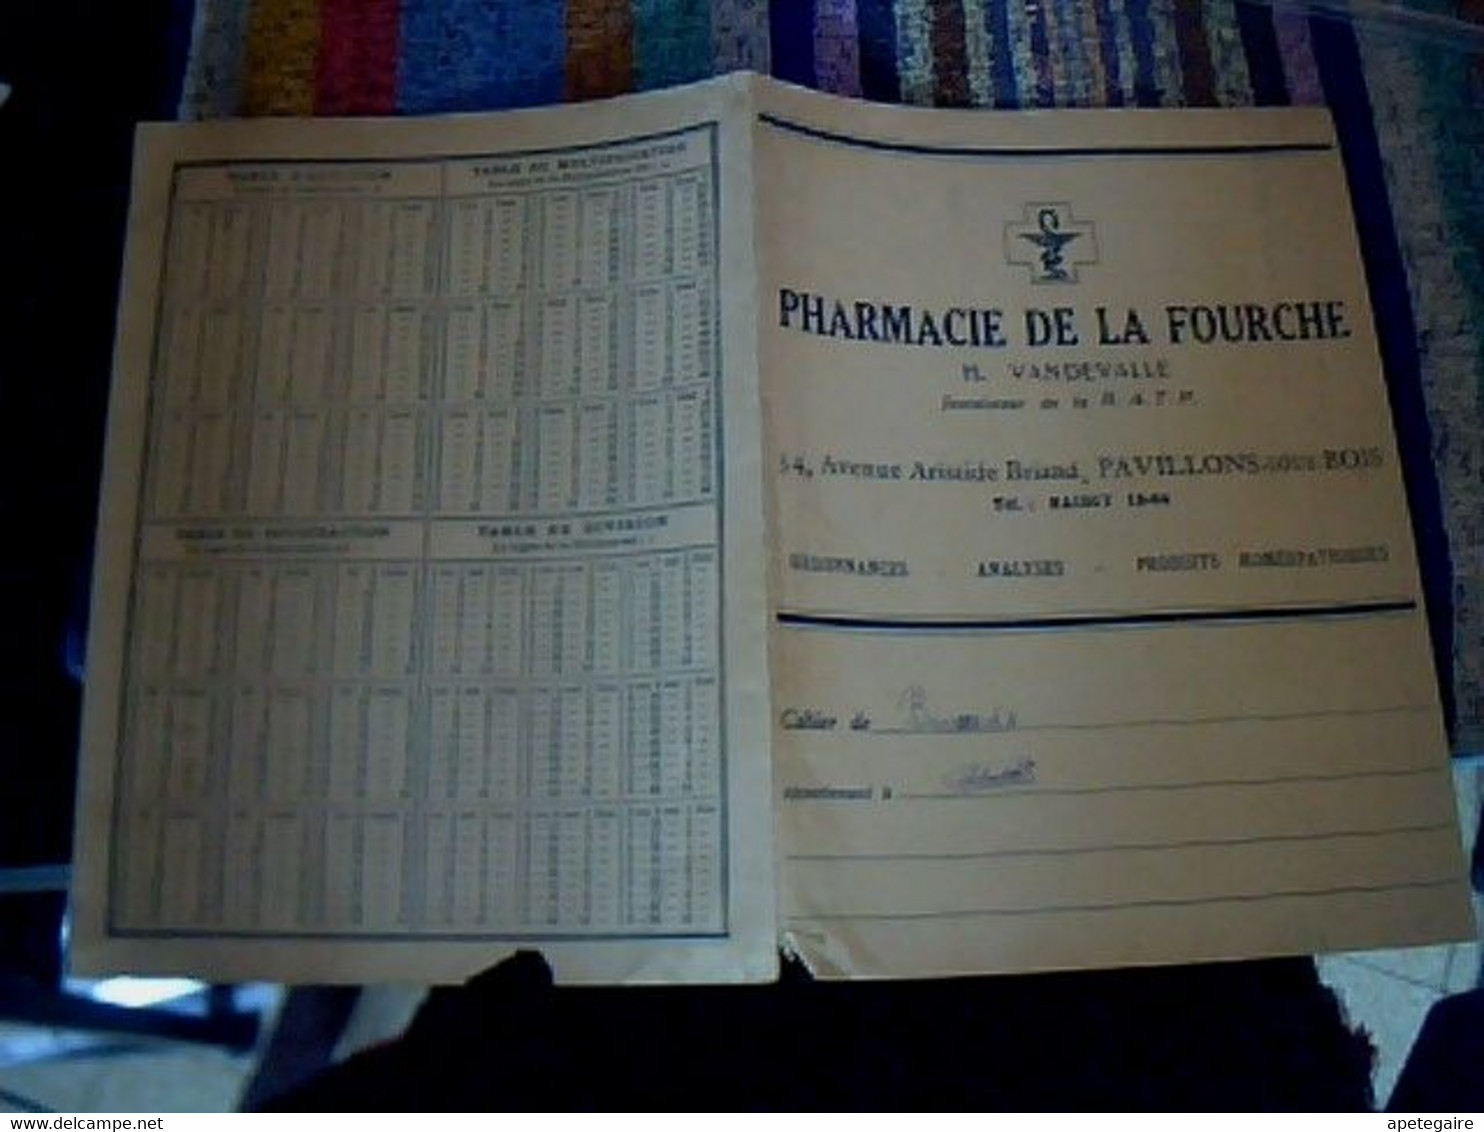 Protège Cahier Publicitaire Pharmacie De La Fourche Fournisseur De La R.A.T.P.  H. Van De Valle à Pavillon Sous Bois - P